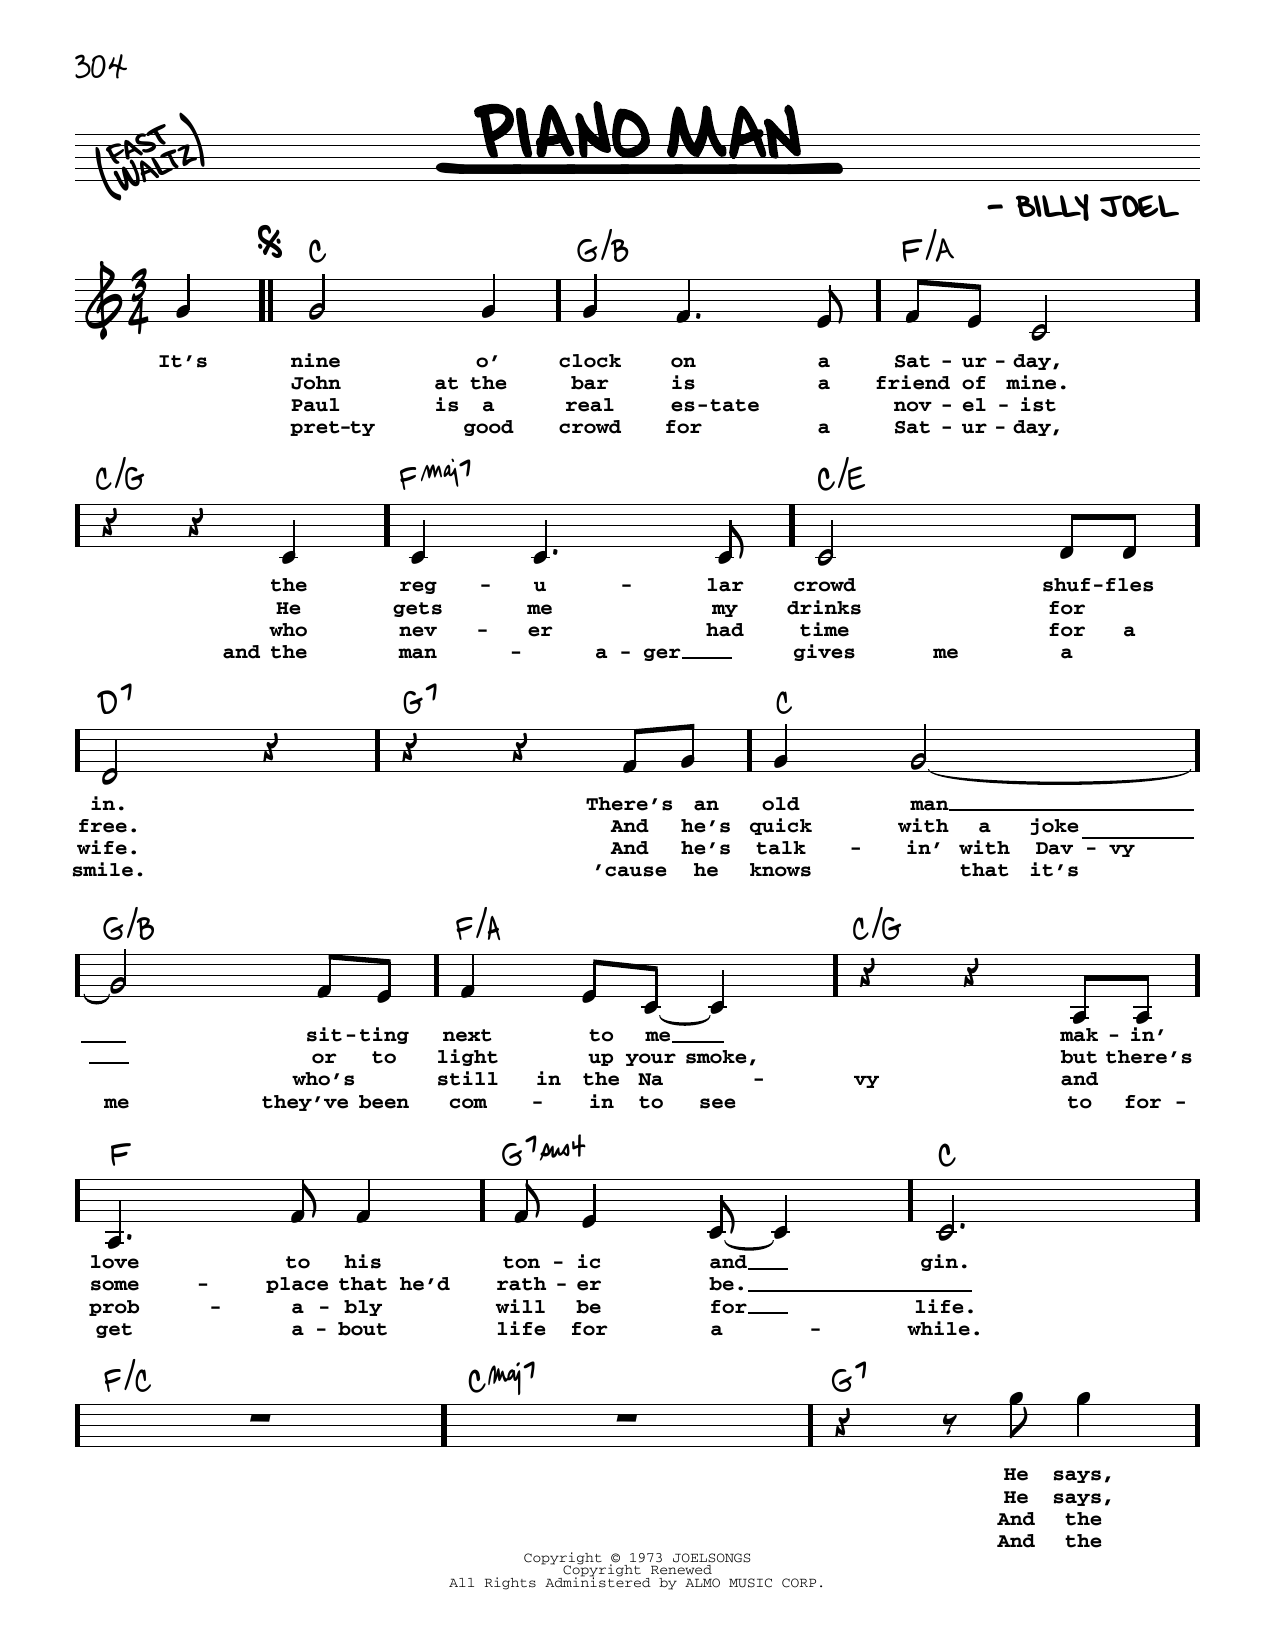 Billy Joel "Piano Man" Sheet Music | Download Printable PDF Score. SKU